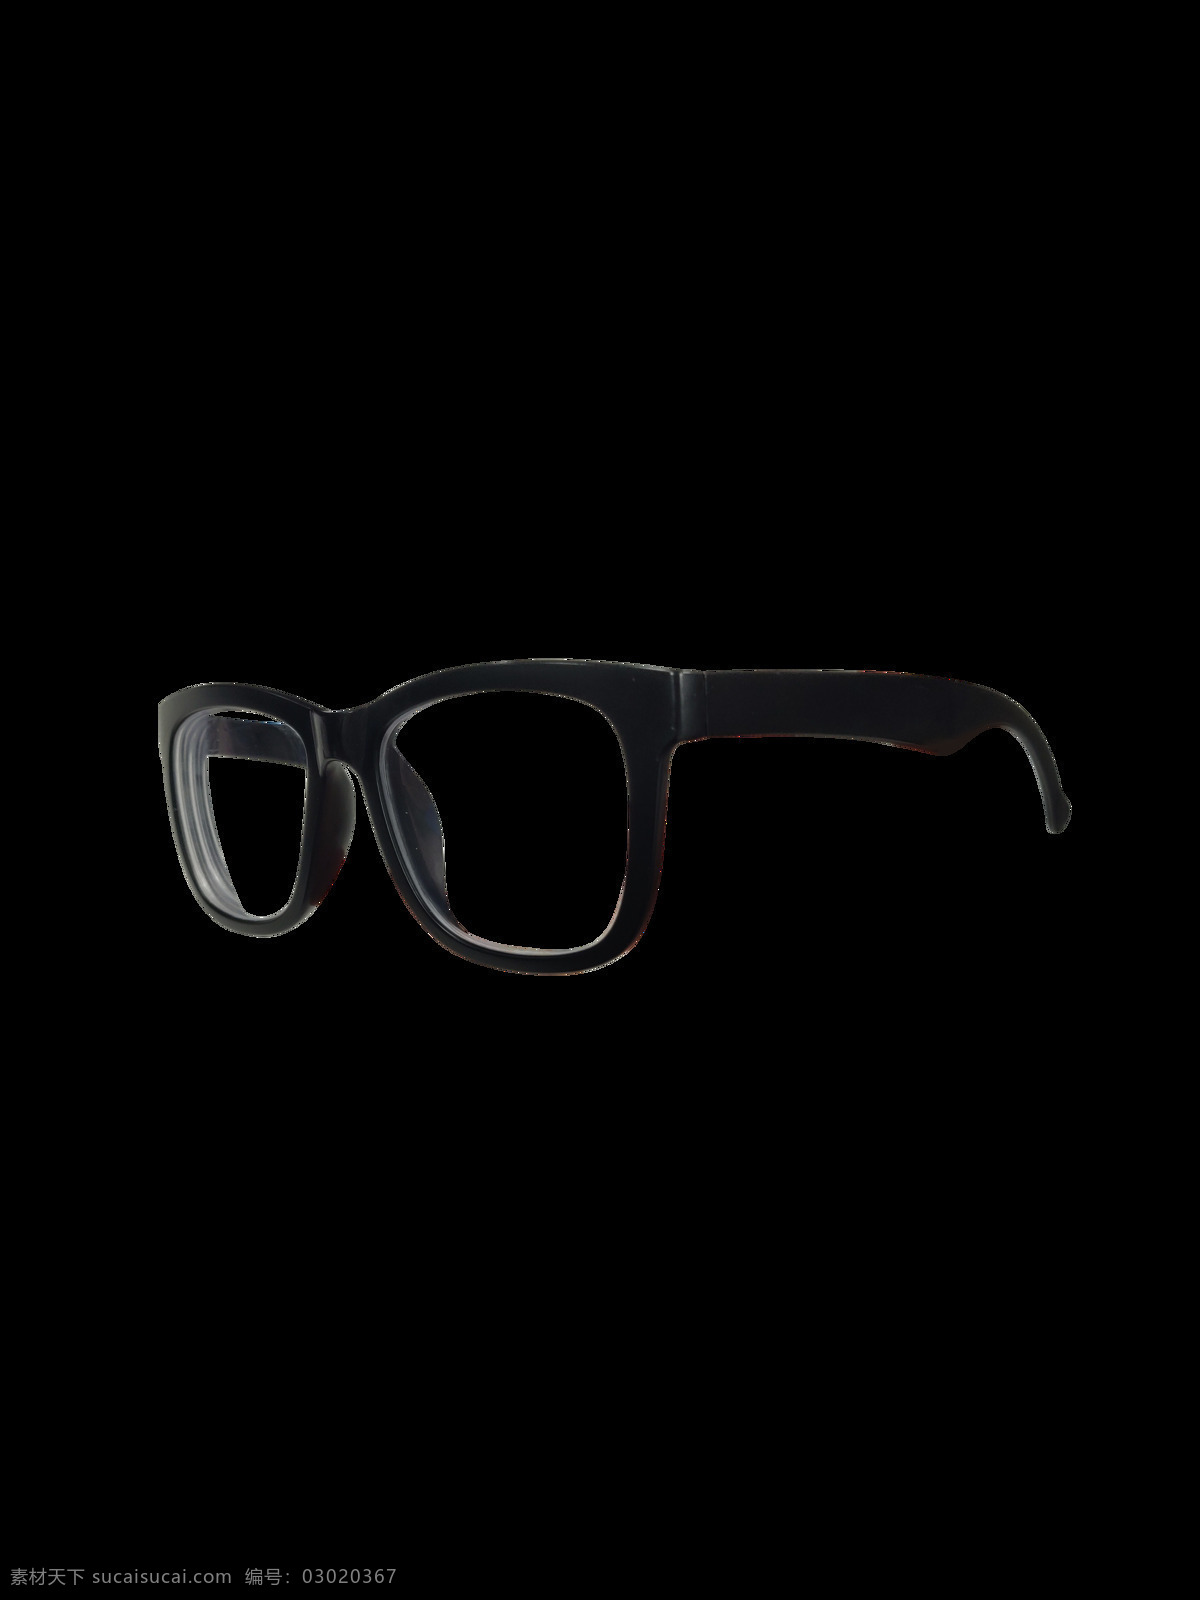 眼镜图片 黑色 眼镜 镜框 透明 眼镜框 生活百科 生活用品